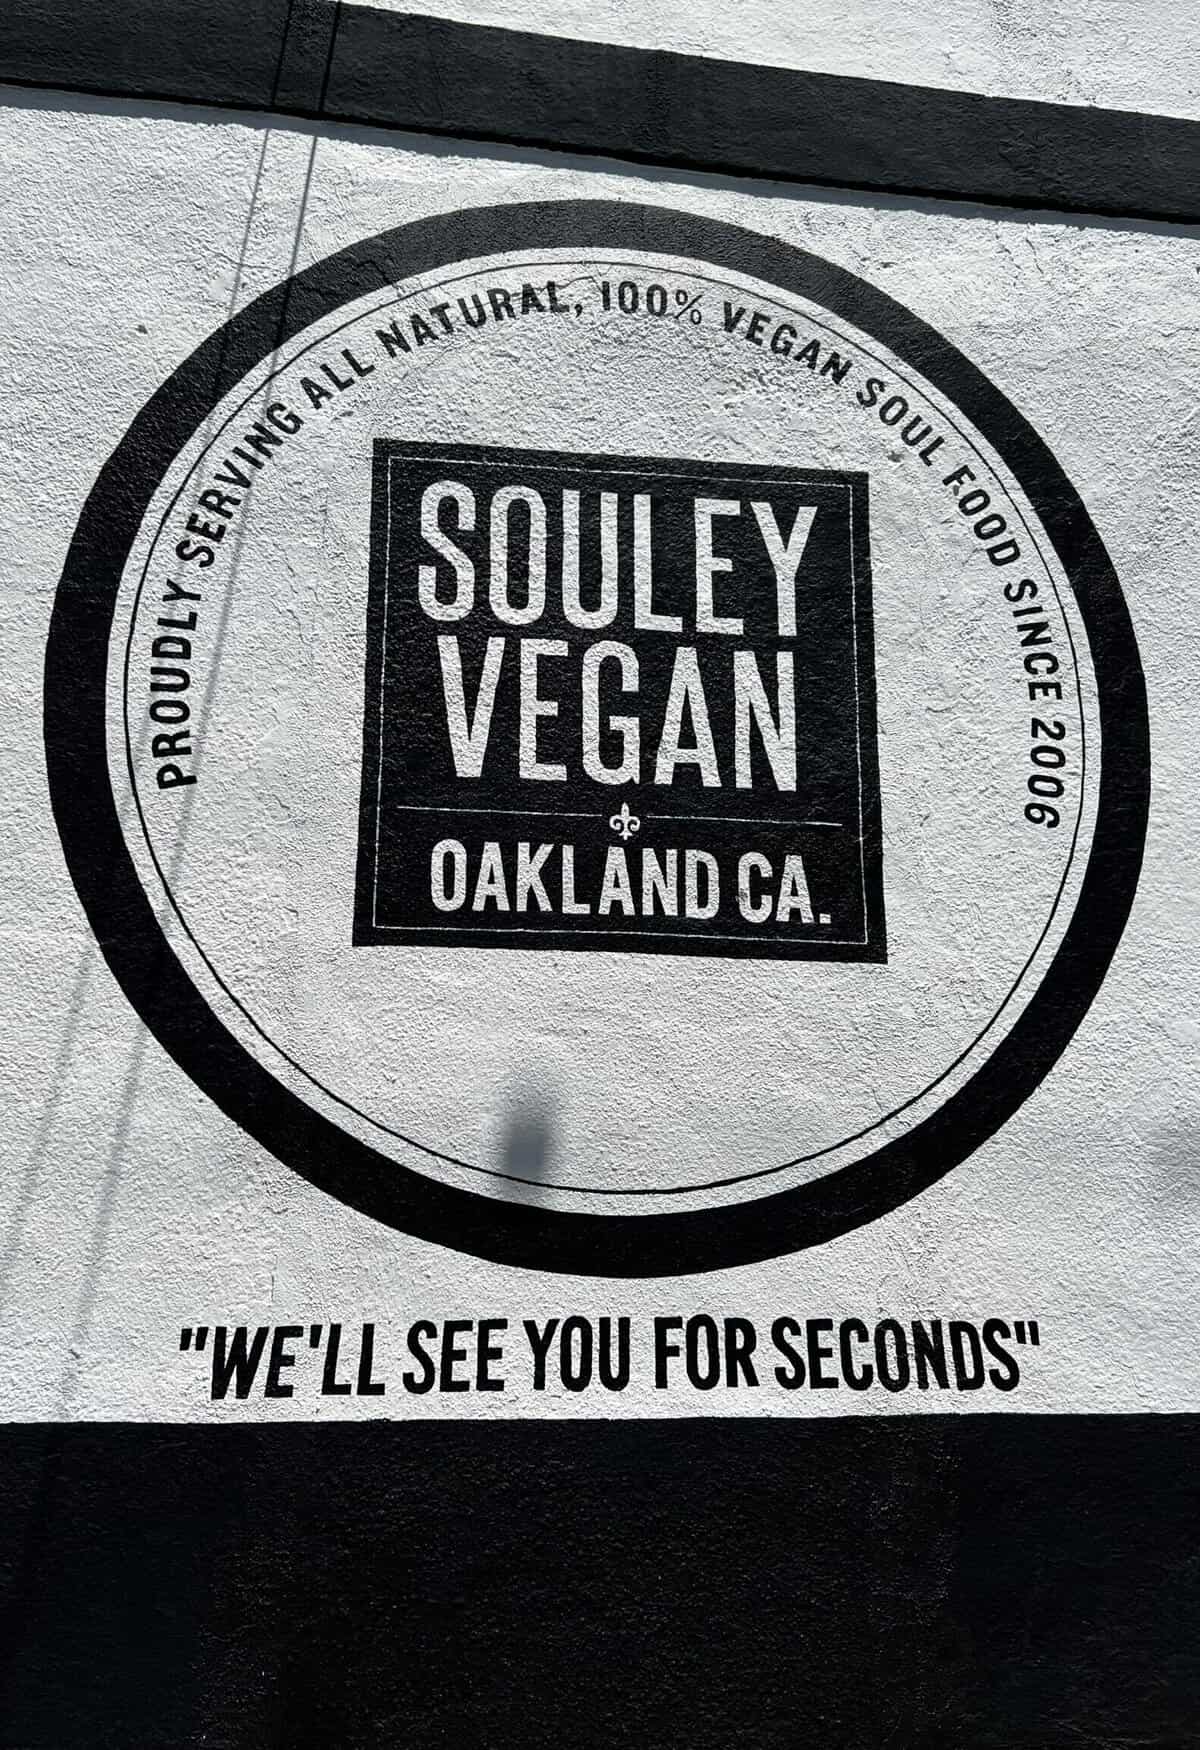 Souley Vegan in Oakland, CA